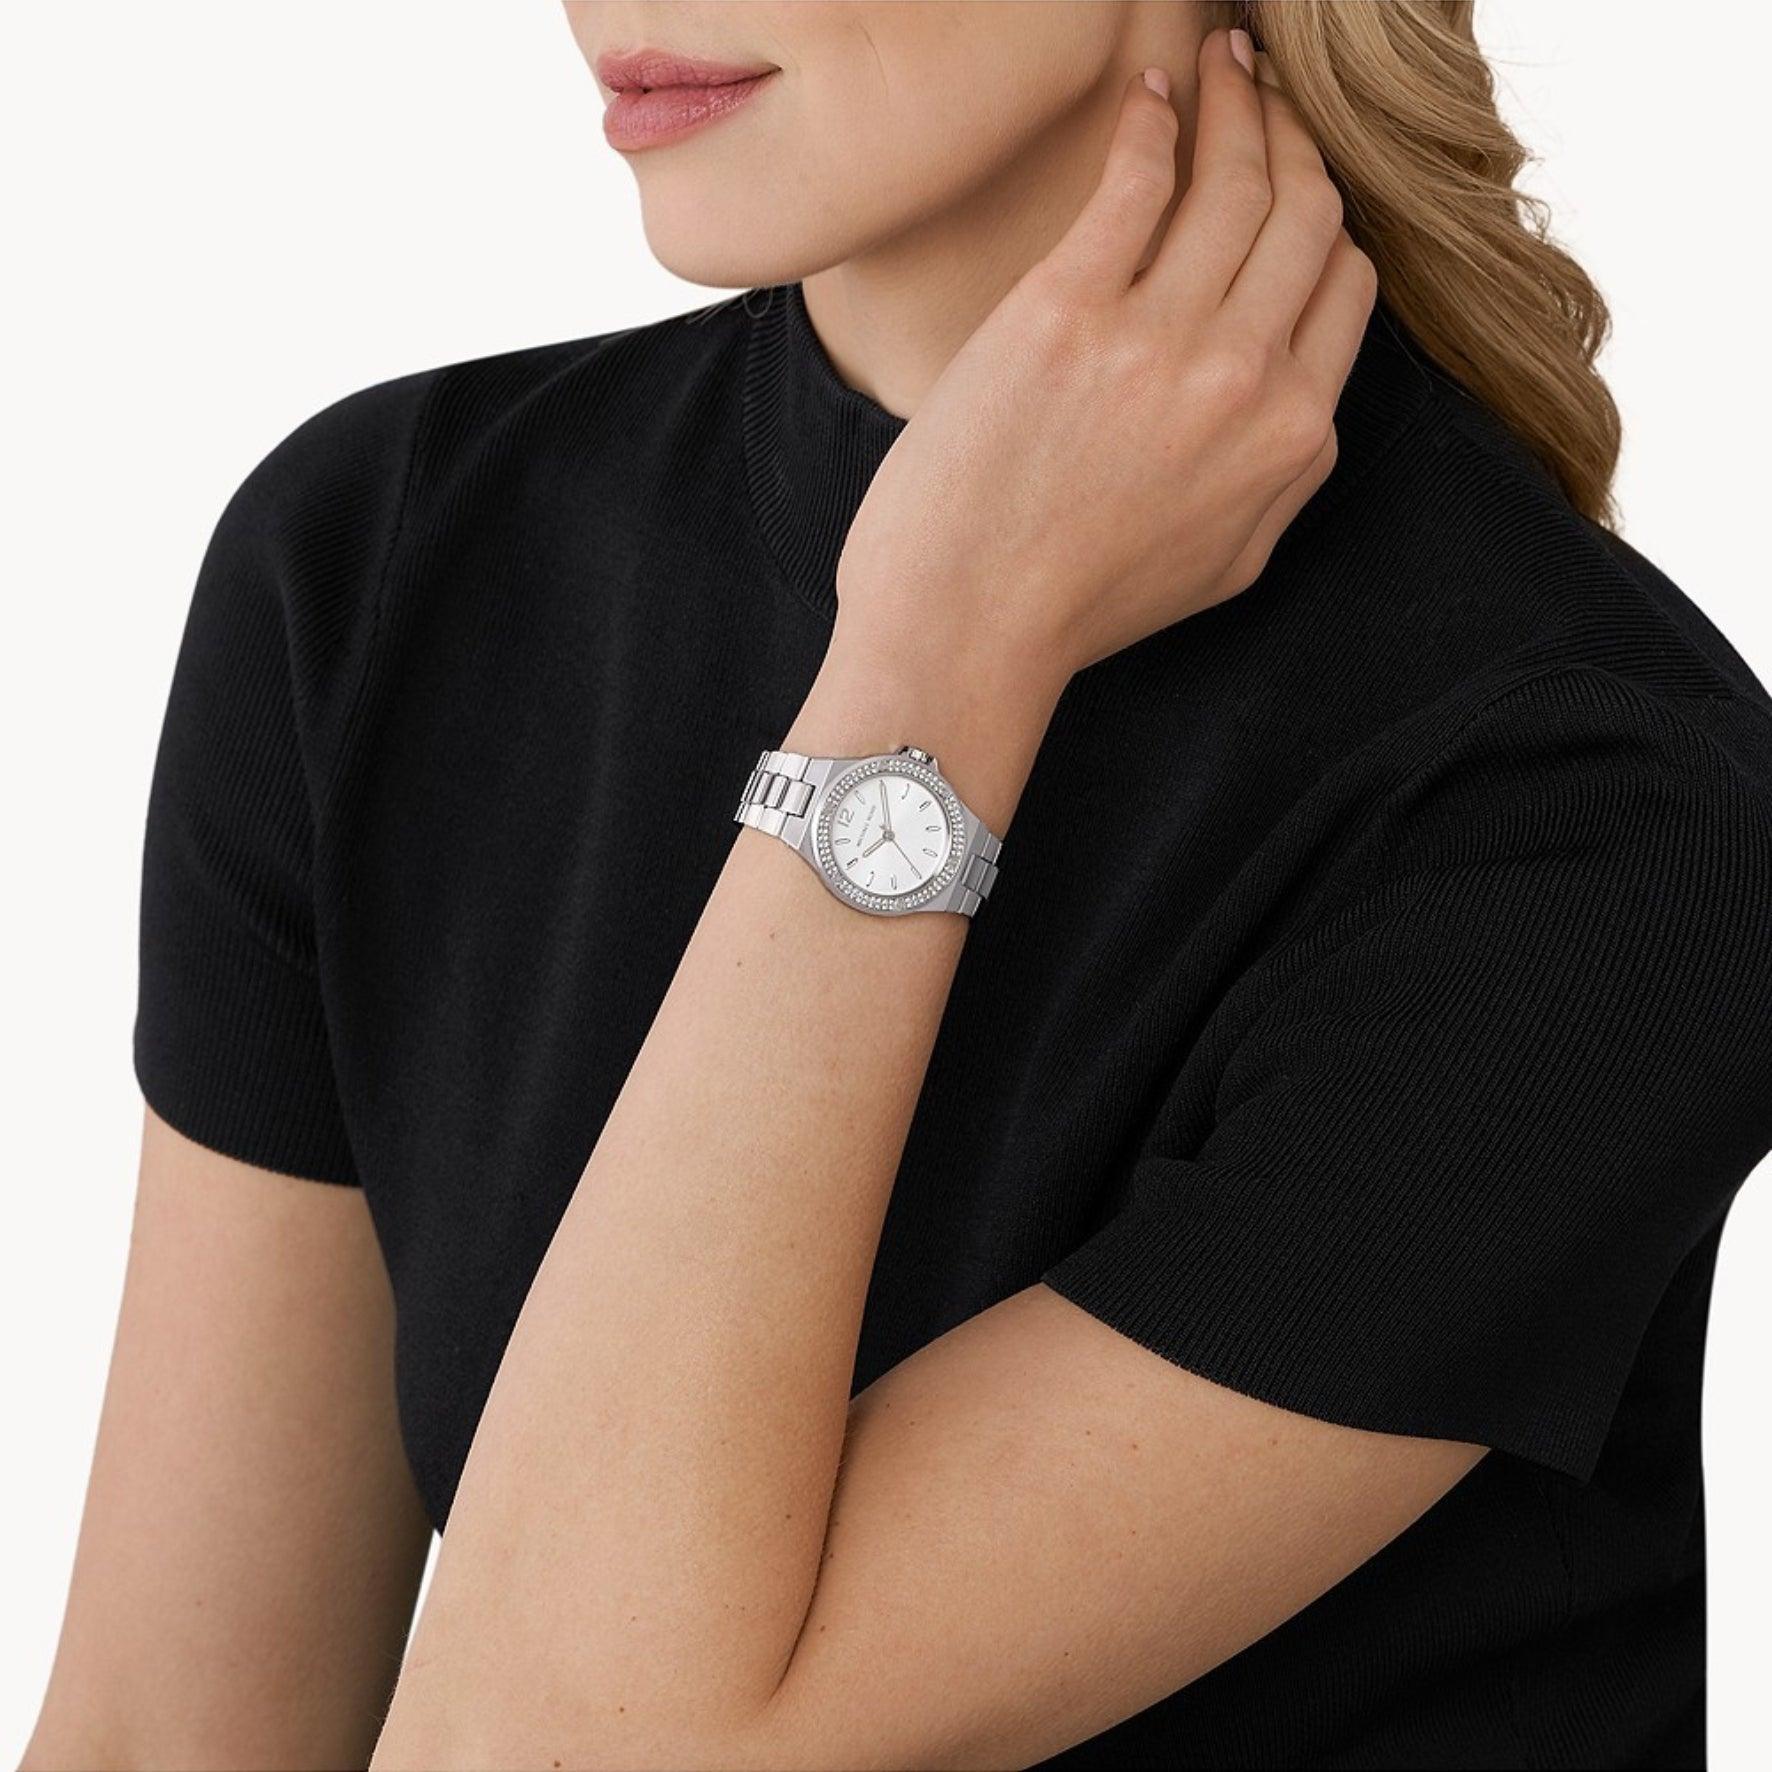 Γυναικείο ρολόι Michael Kors Lennox MK7280 με ασημί ατσάλινο μπρασελέ, ασημί καντράν και στρογγυλό στεφάνι 32mm με ζιργκόν.